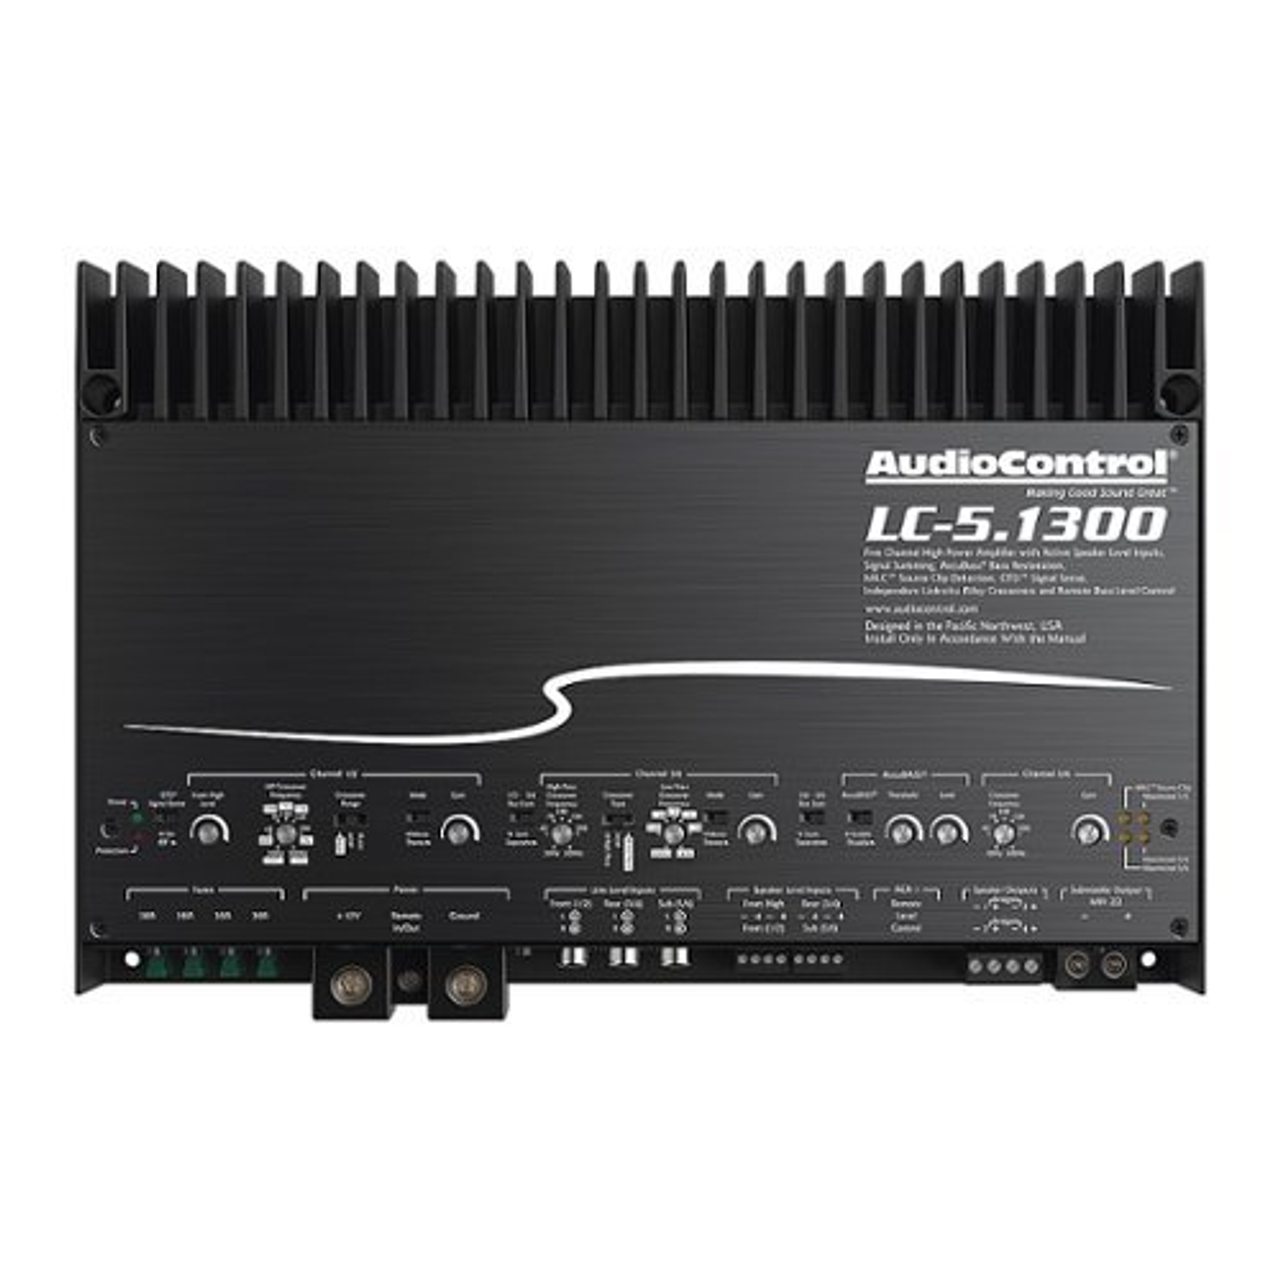 AudioControl - LC-5.1300 - Black